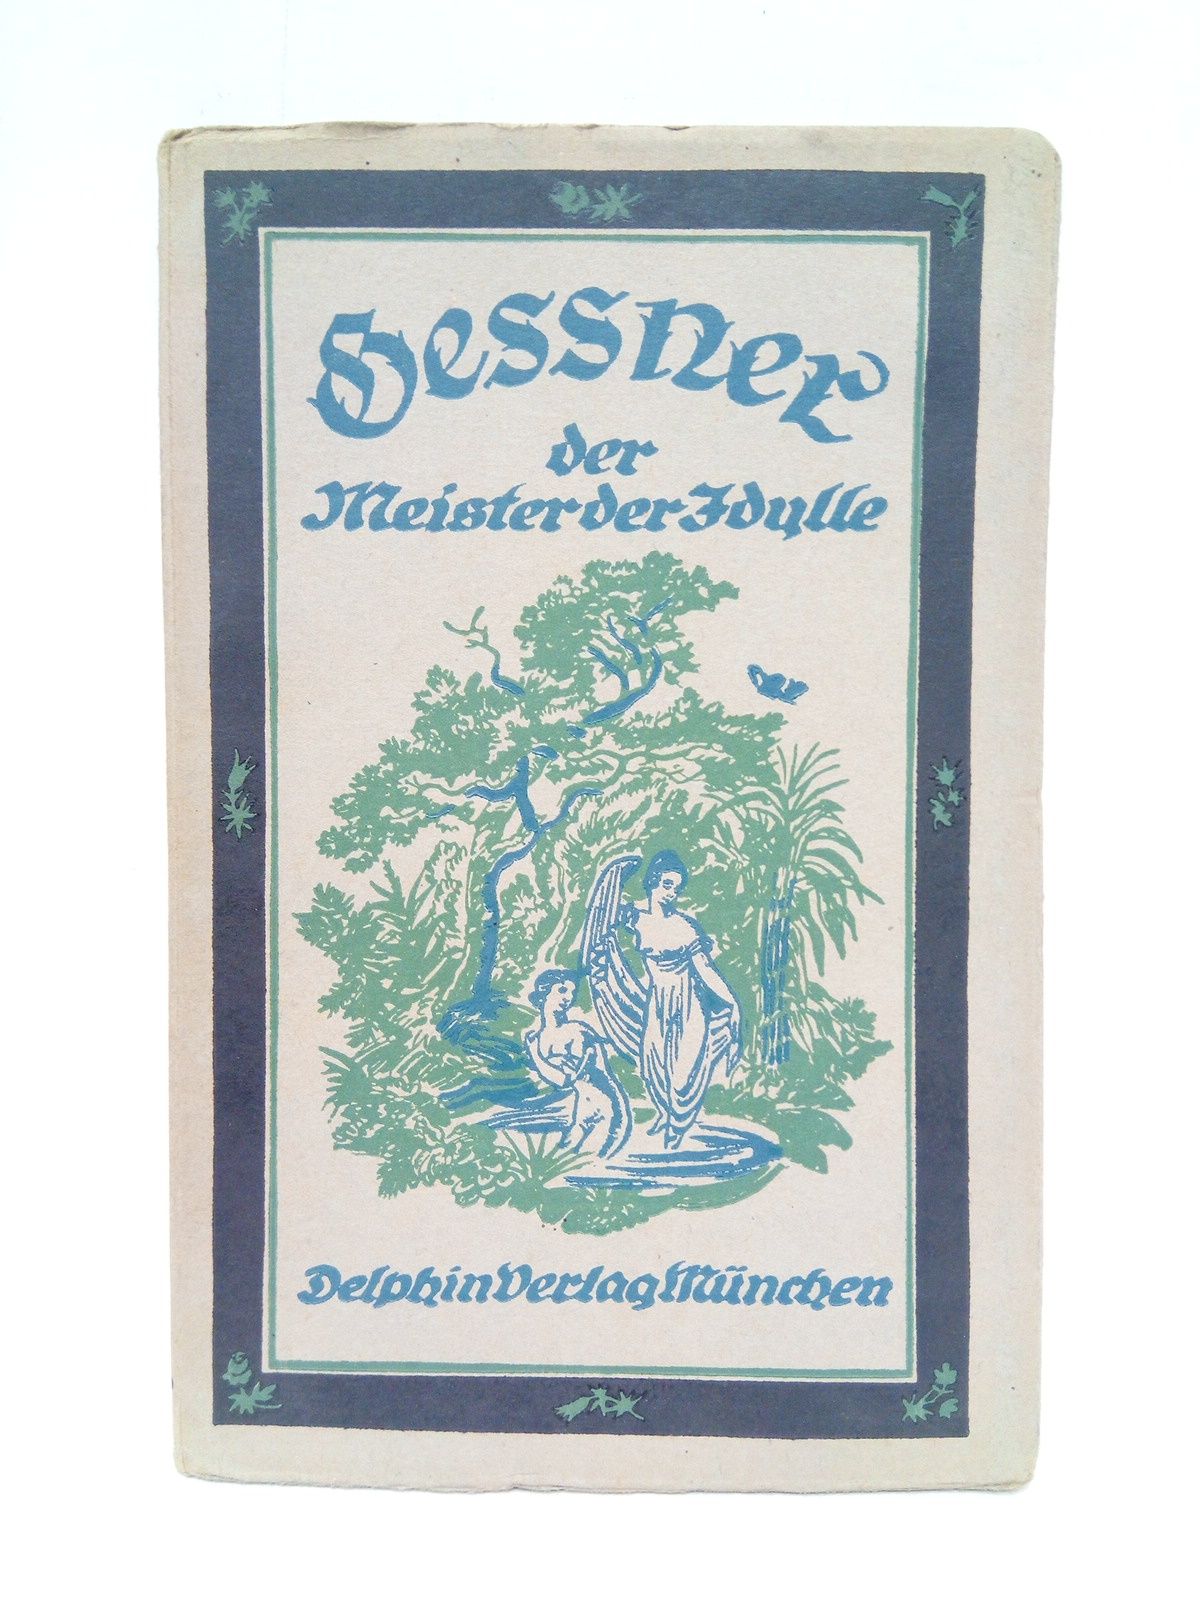 DESSNER... - Dessner der Meister der Edulle / Uusgewhlt und eingeleitet von Paul F. Schmidt; Mit 34 Ubbildungen